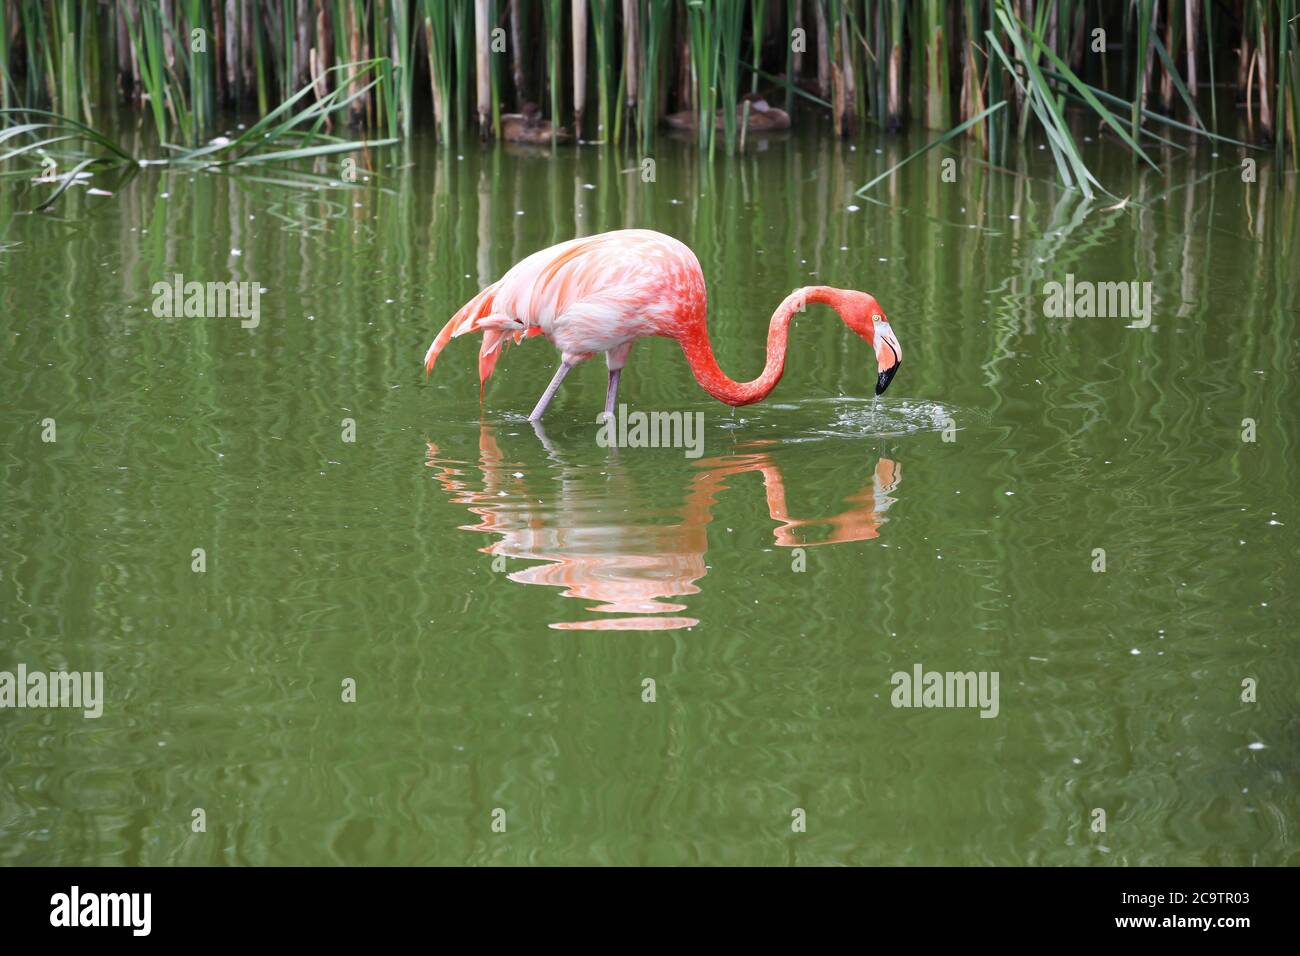 Flamingo marchant dans l'eau Banque D'Images